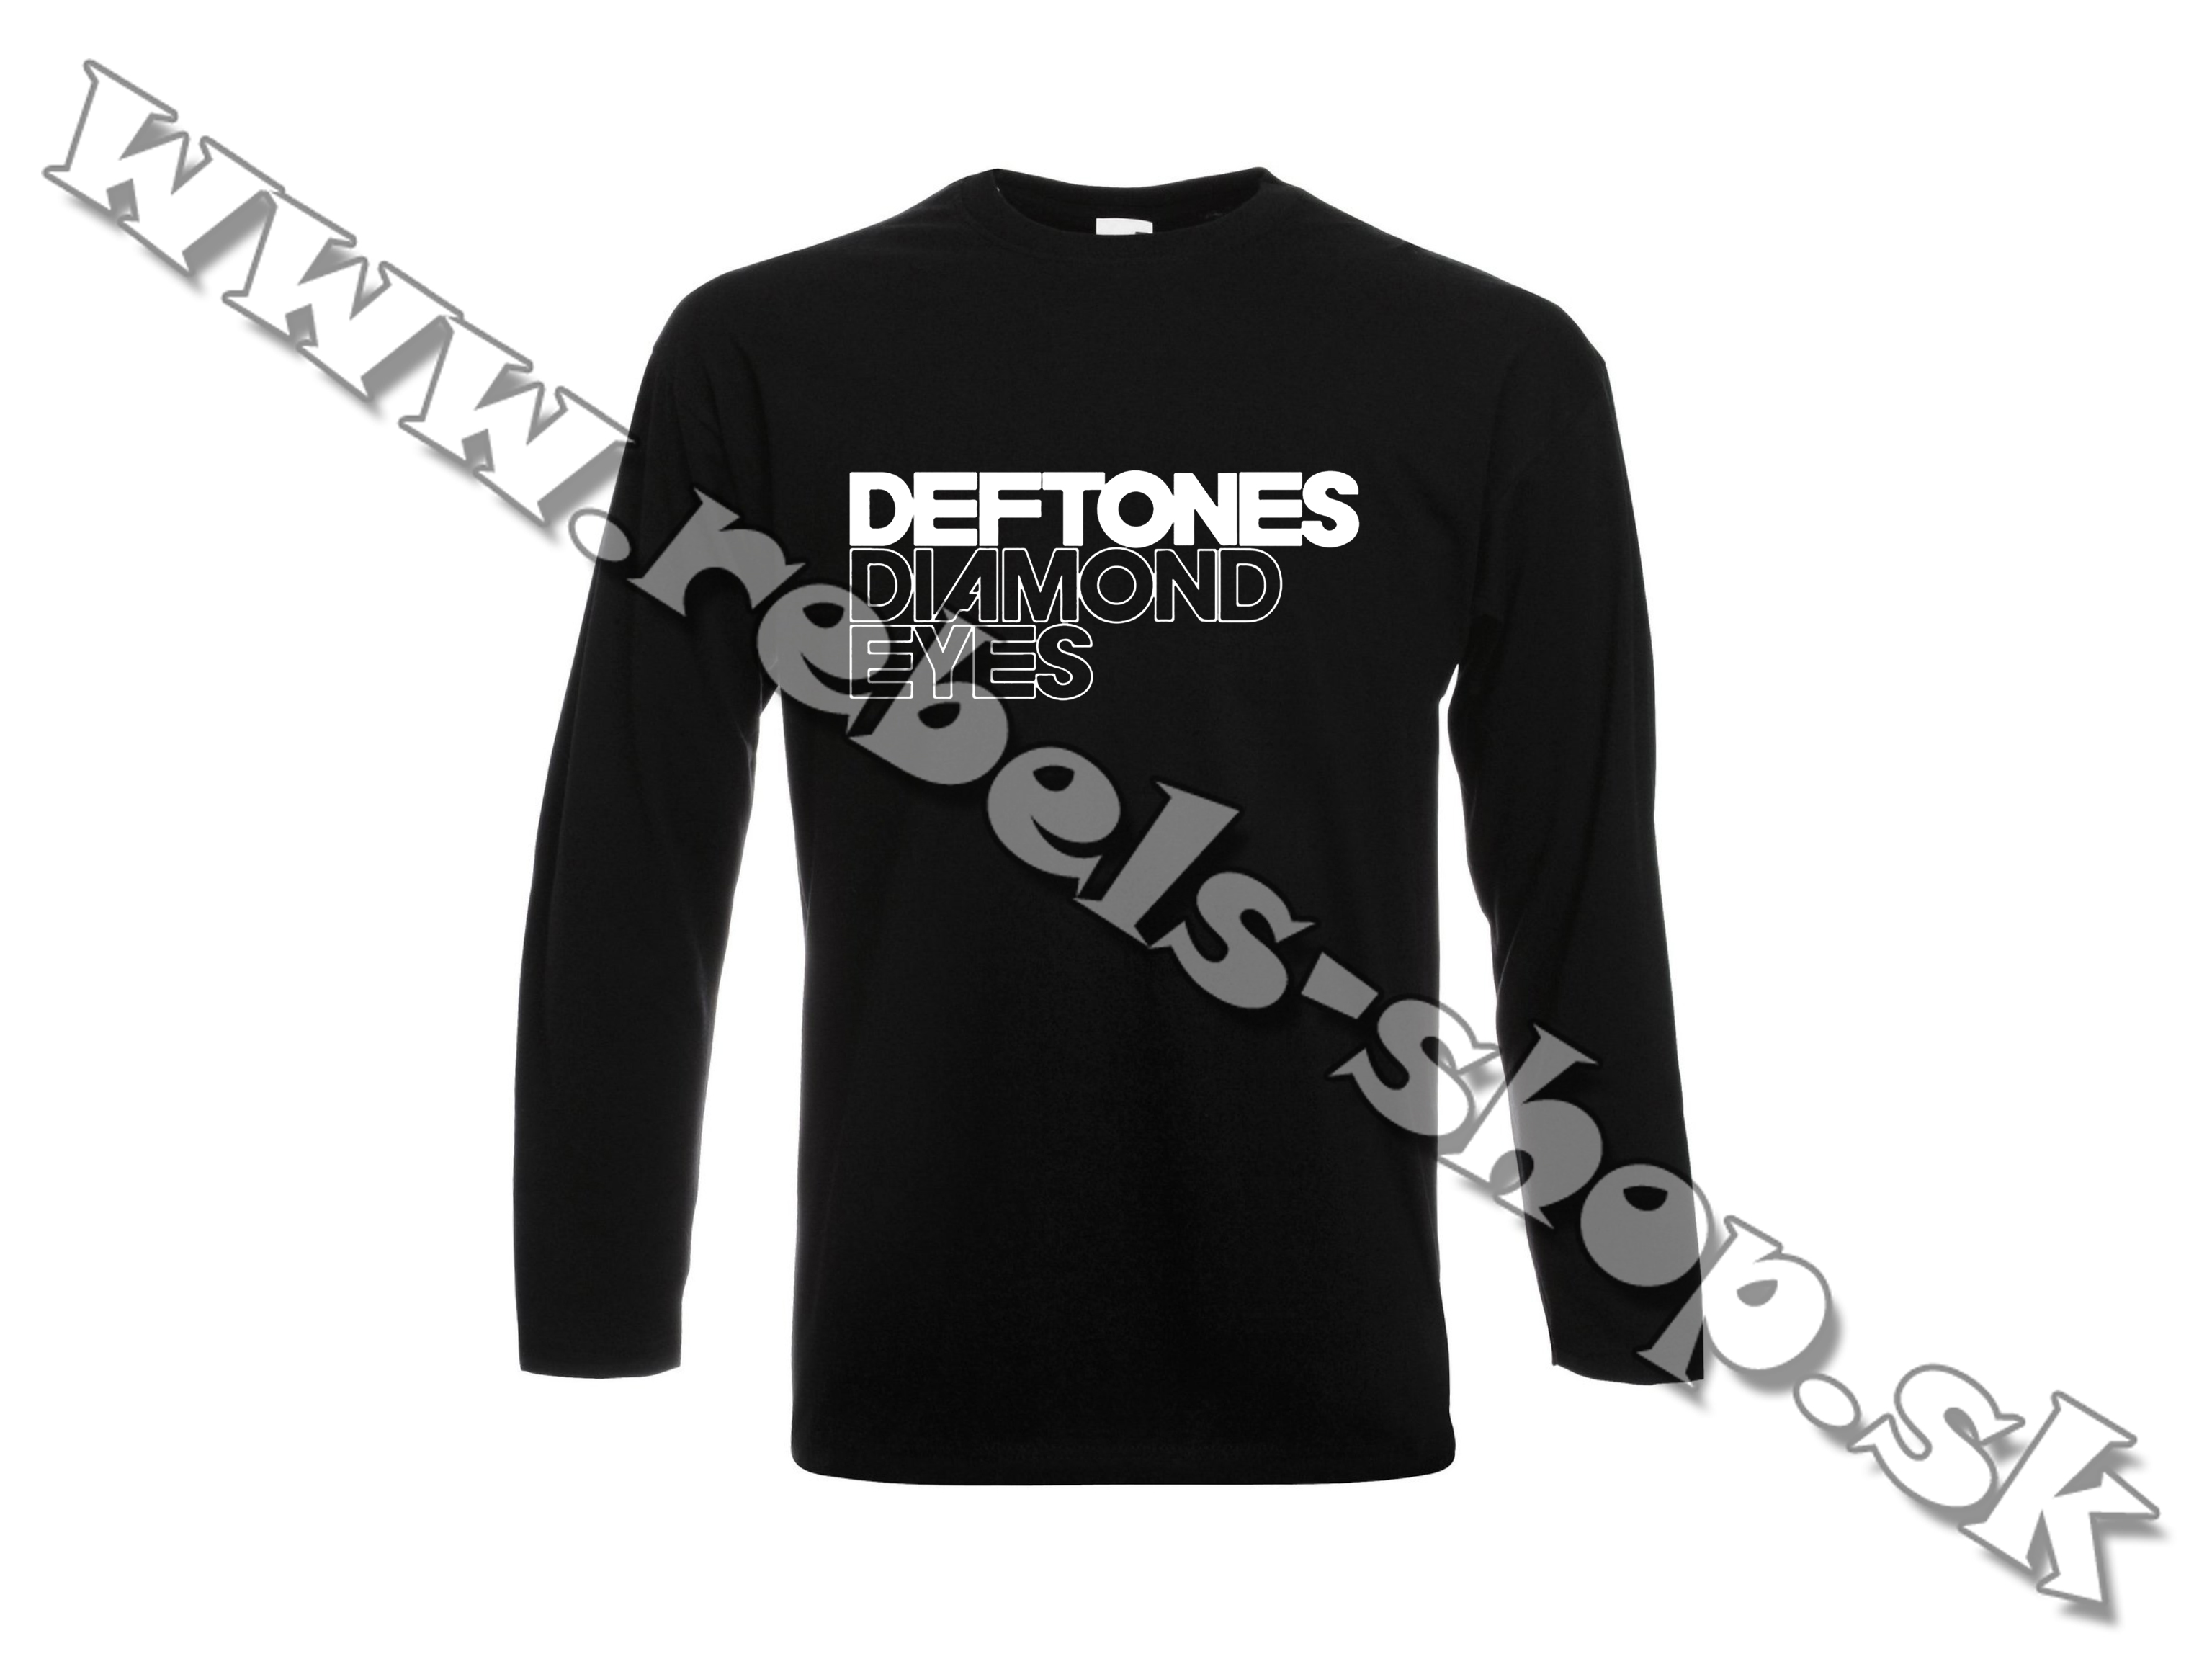 Tričko "Deftones"